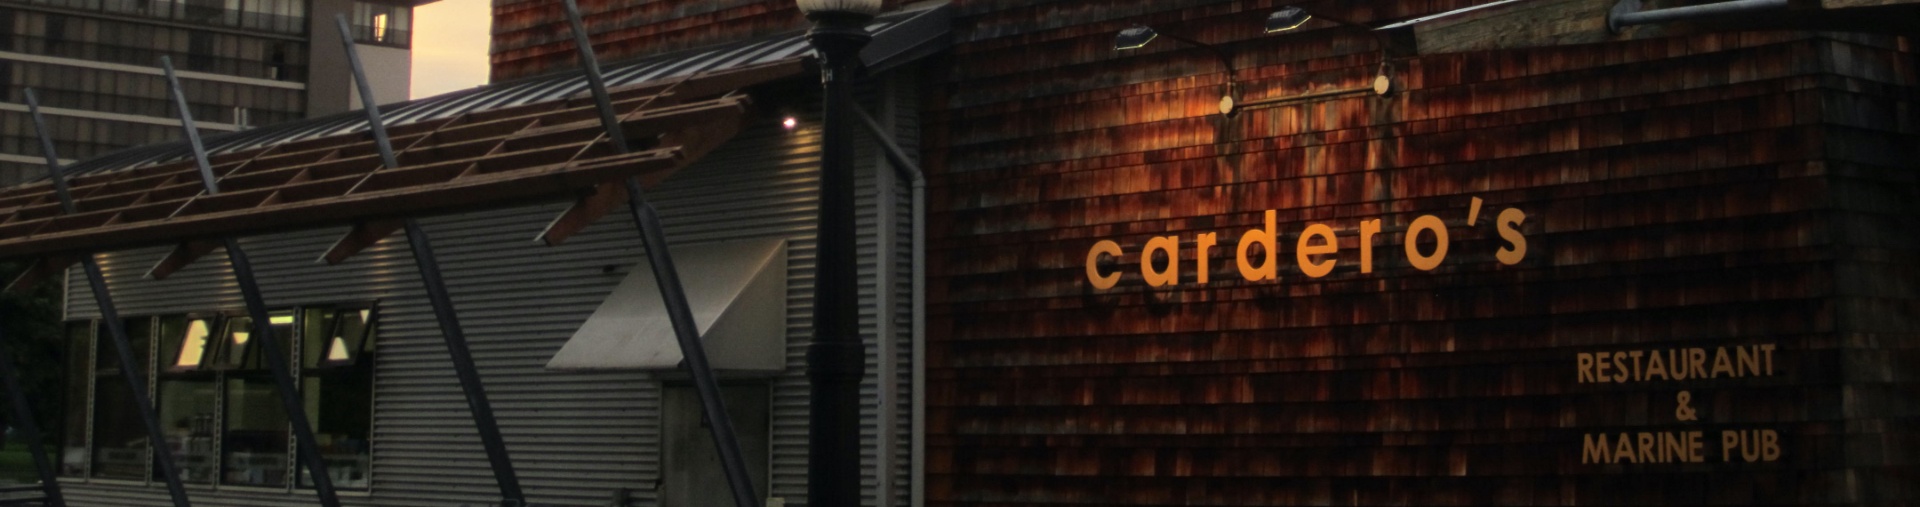 restaurants in coal harbour carderos